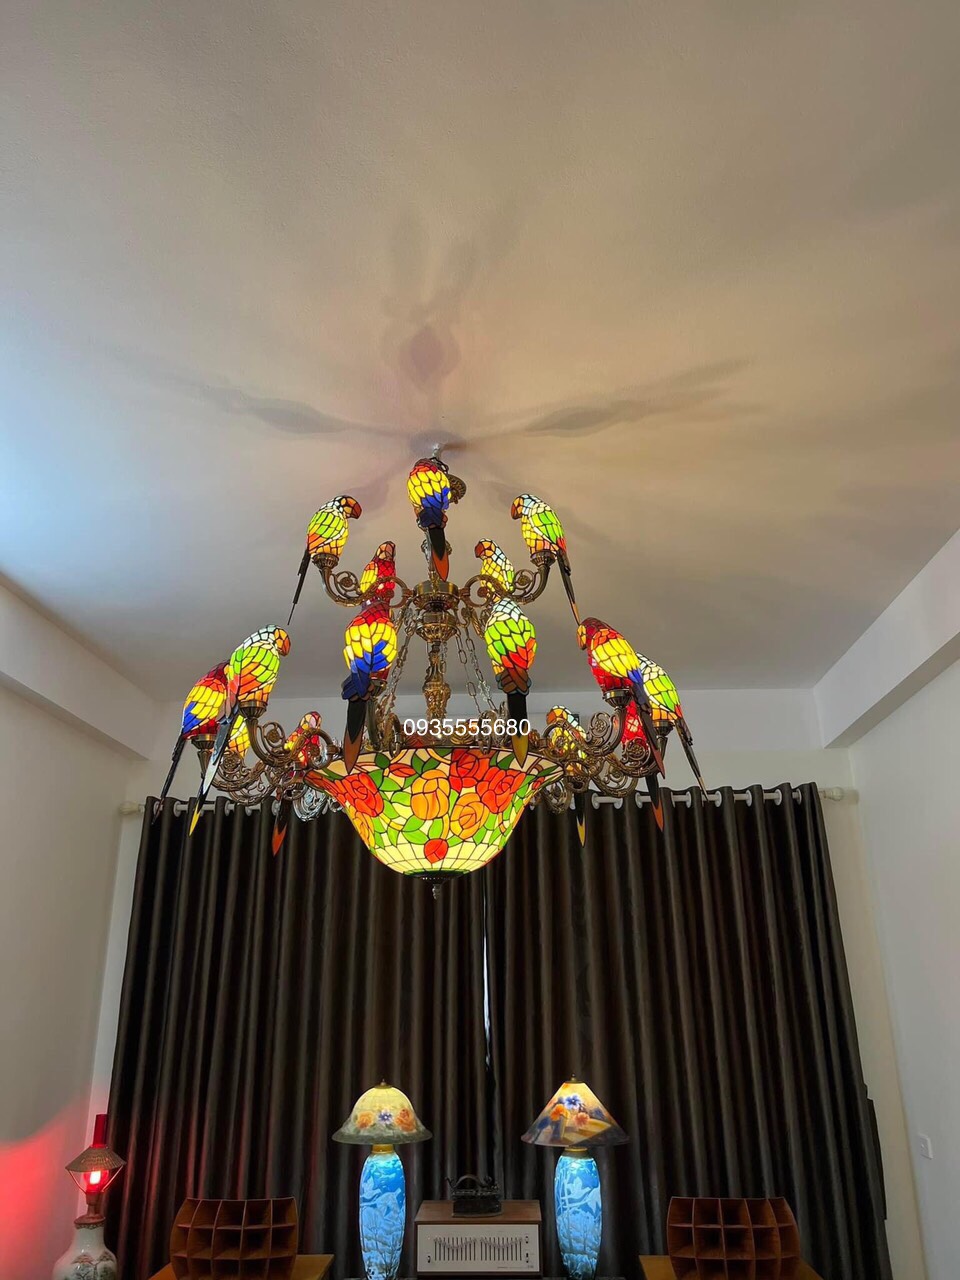 Giao lưu bộ đèn chùm tiffany chim vẹt 2 tầng